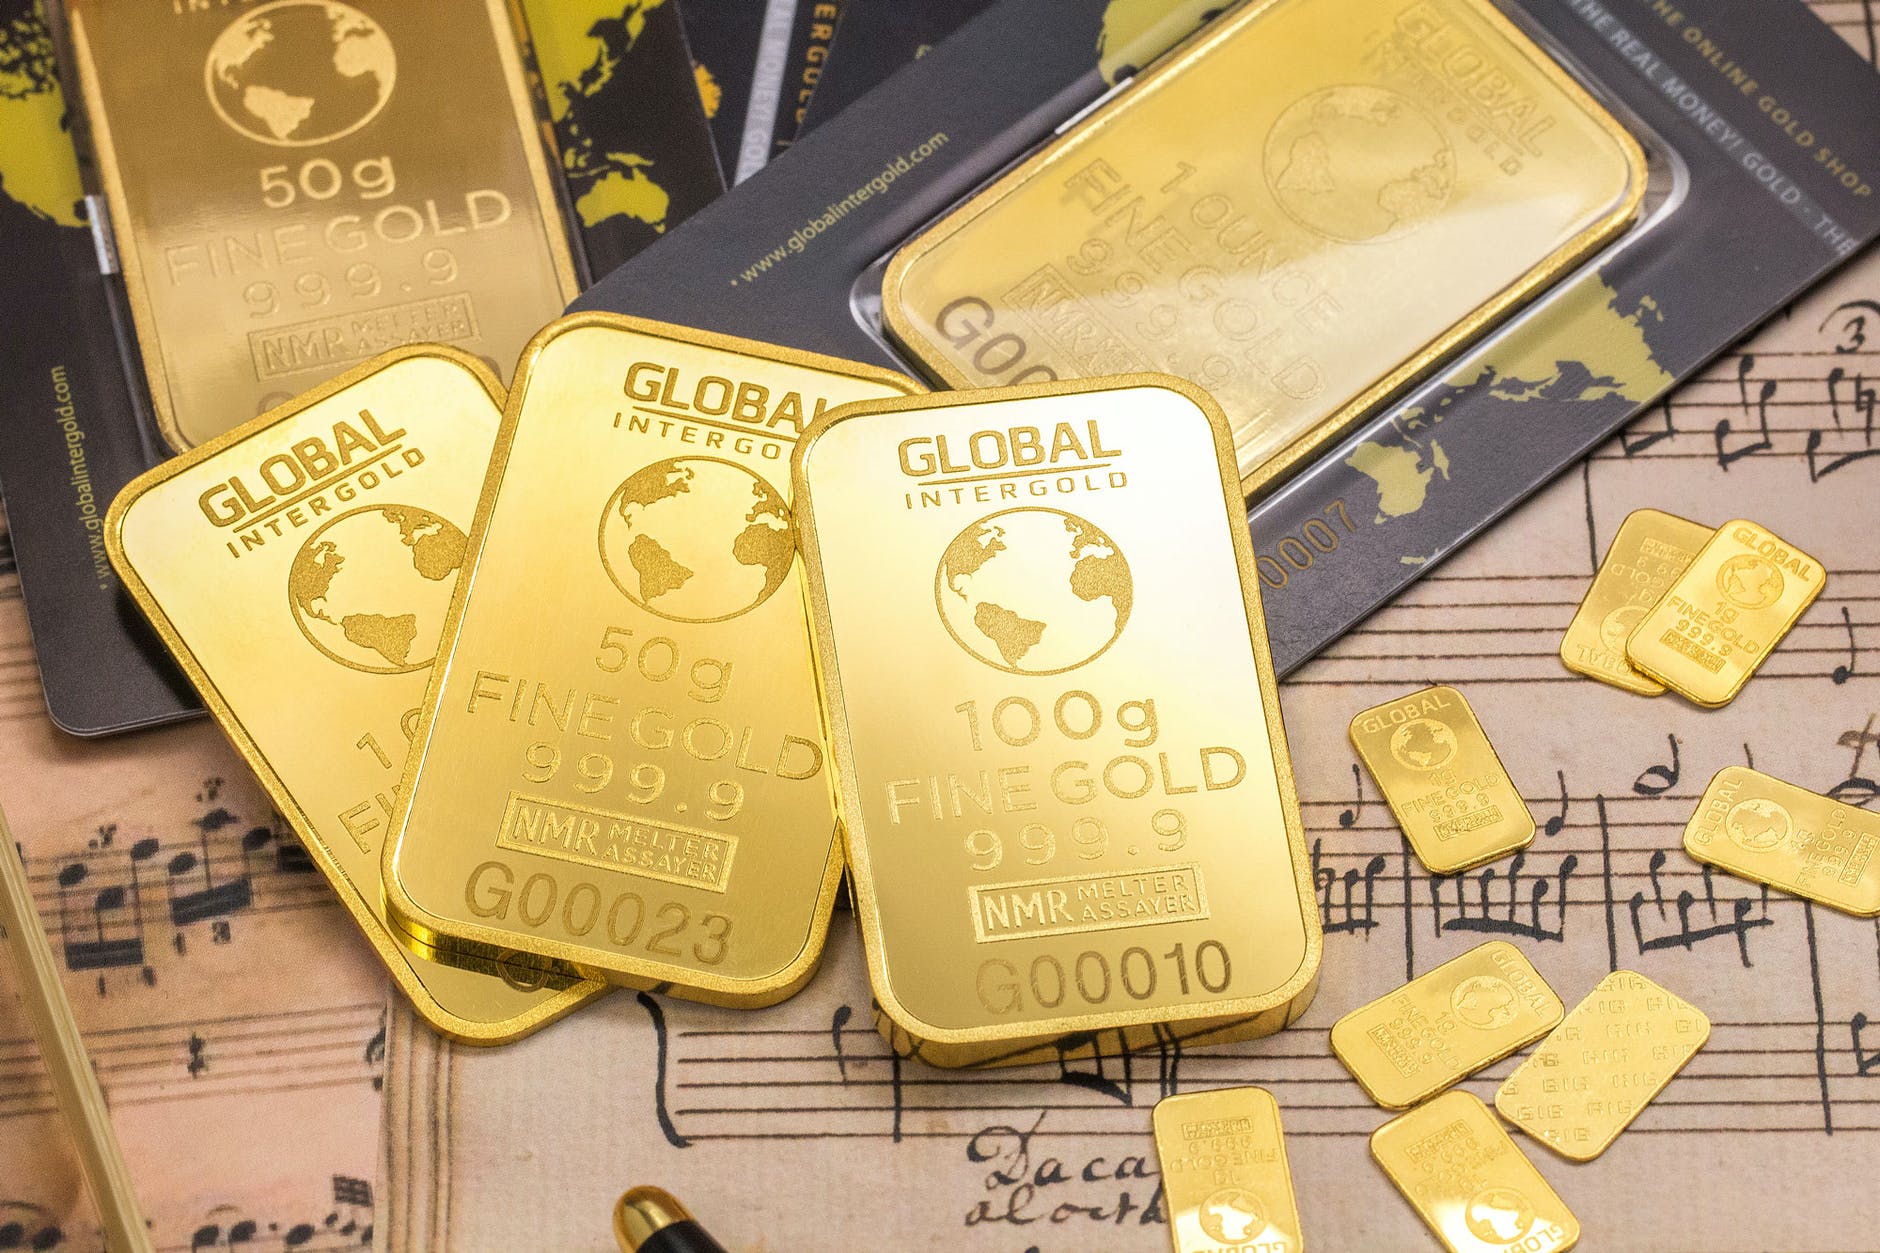 Fake Jews Gold Price Manipulation